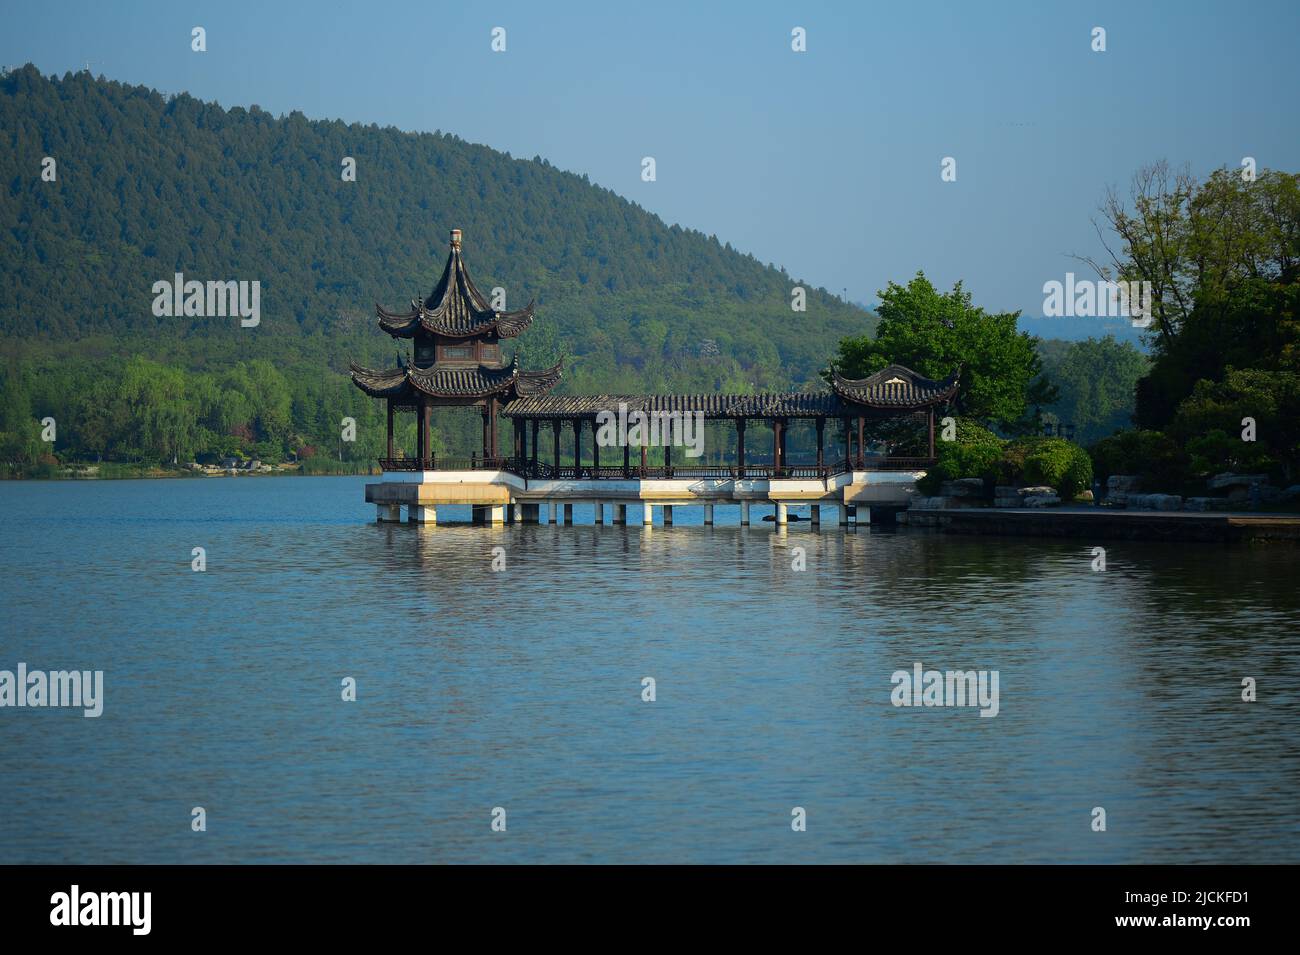 Jiangsu xuzhou yunlong park scenery Stock Photo